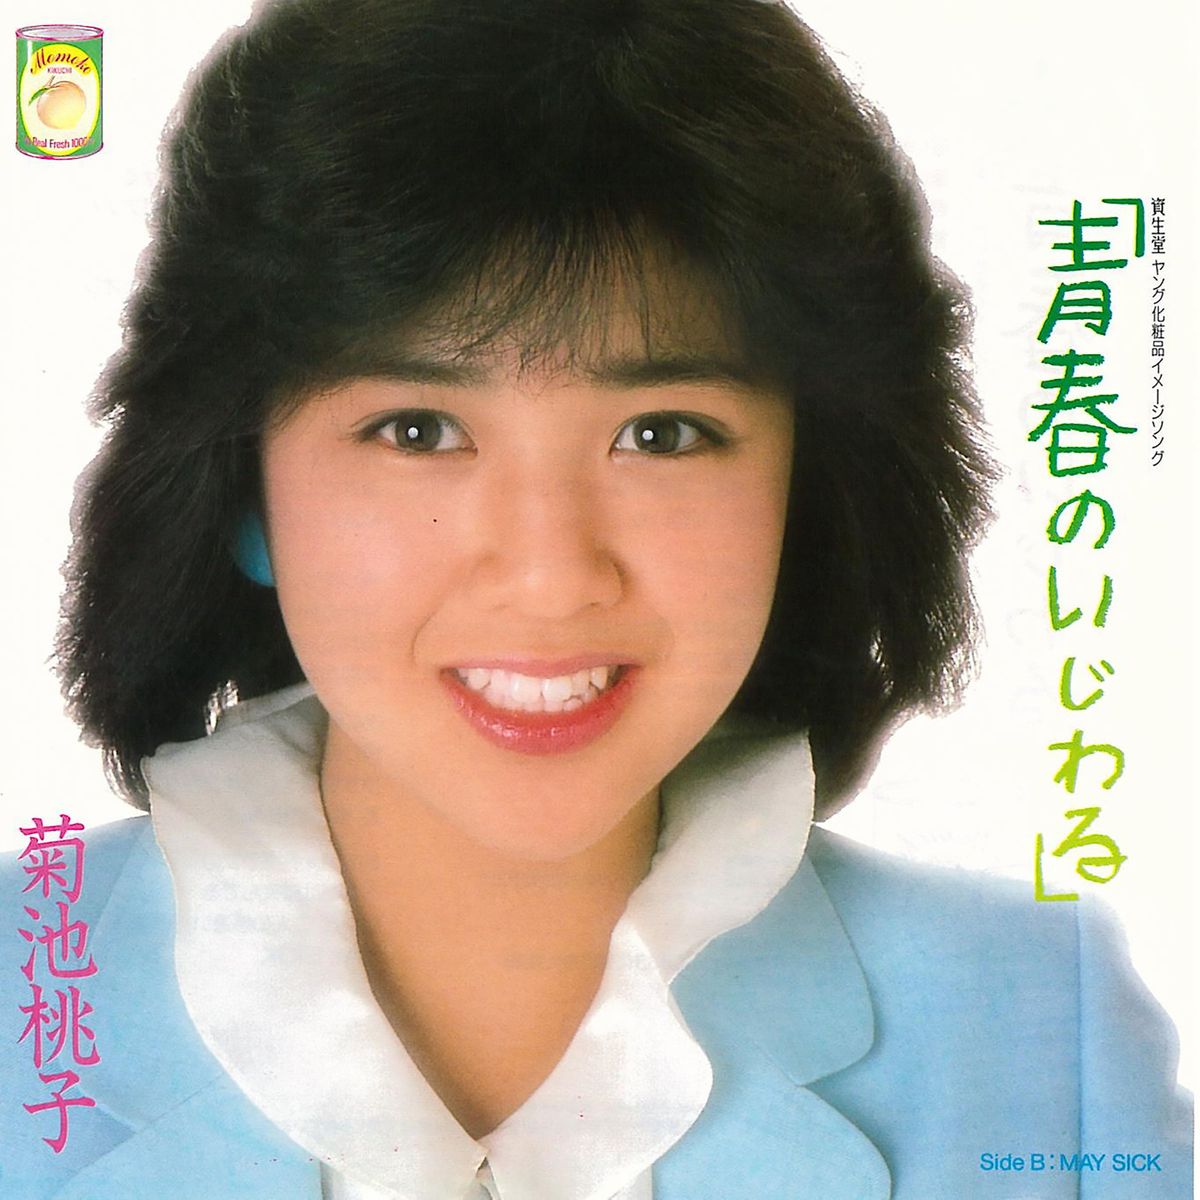 菊池桃子さんのデビュー曲『青春のいじわる』（1984年）のジャケット写真